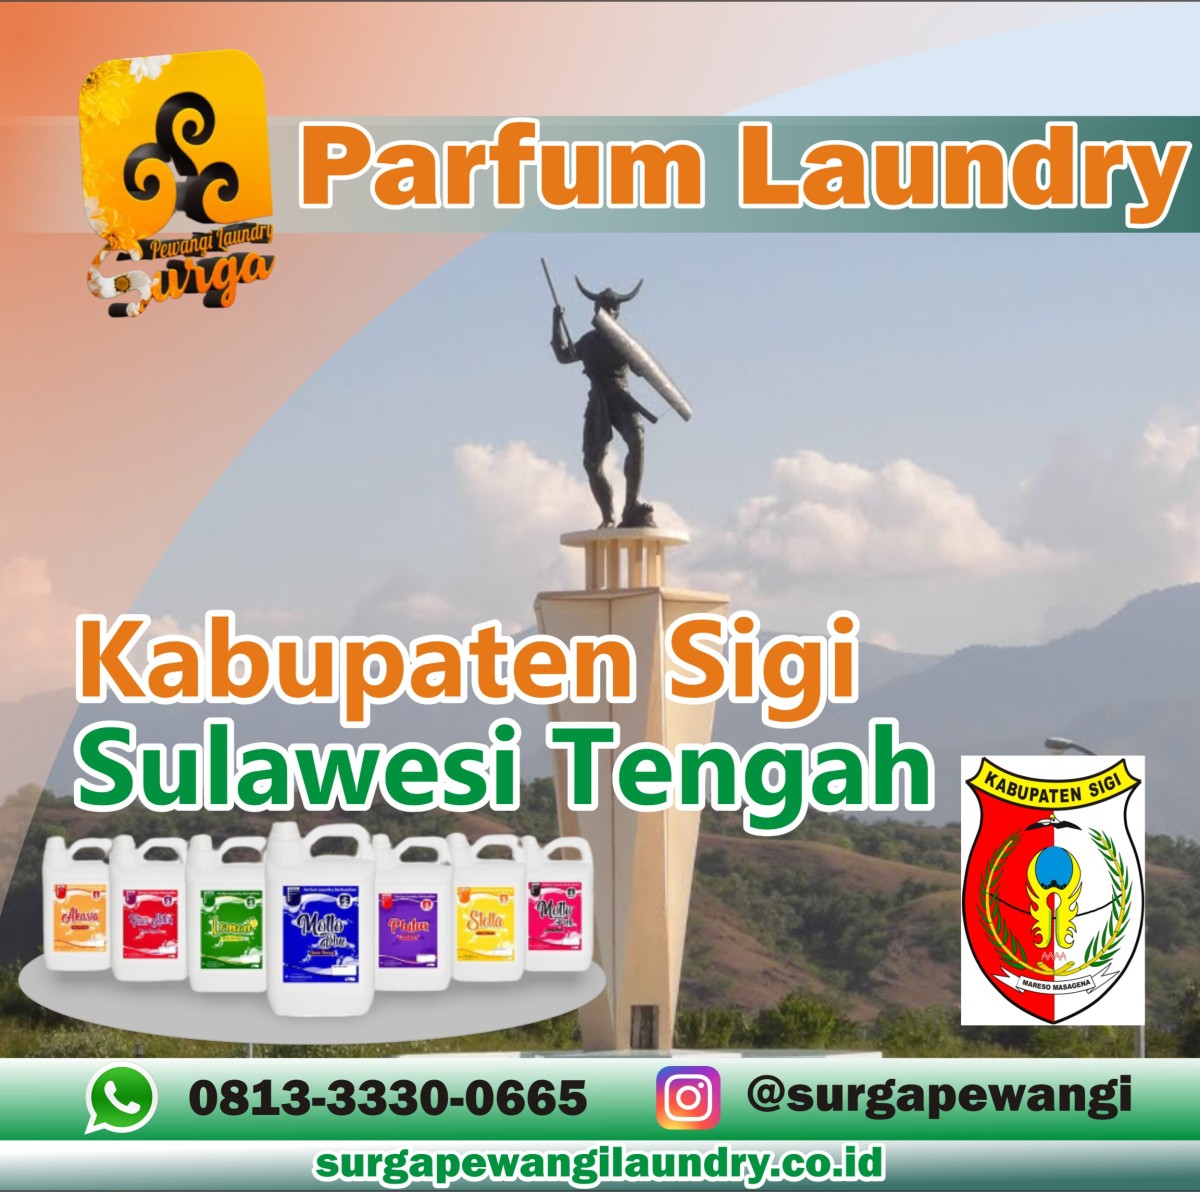 Parfum Laundry Kabupaten Sigi